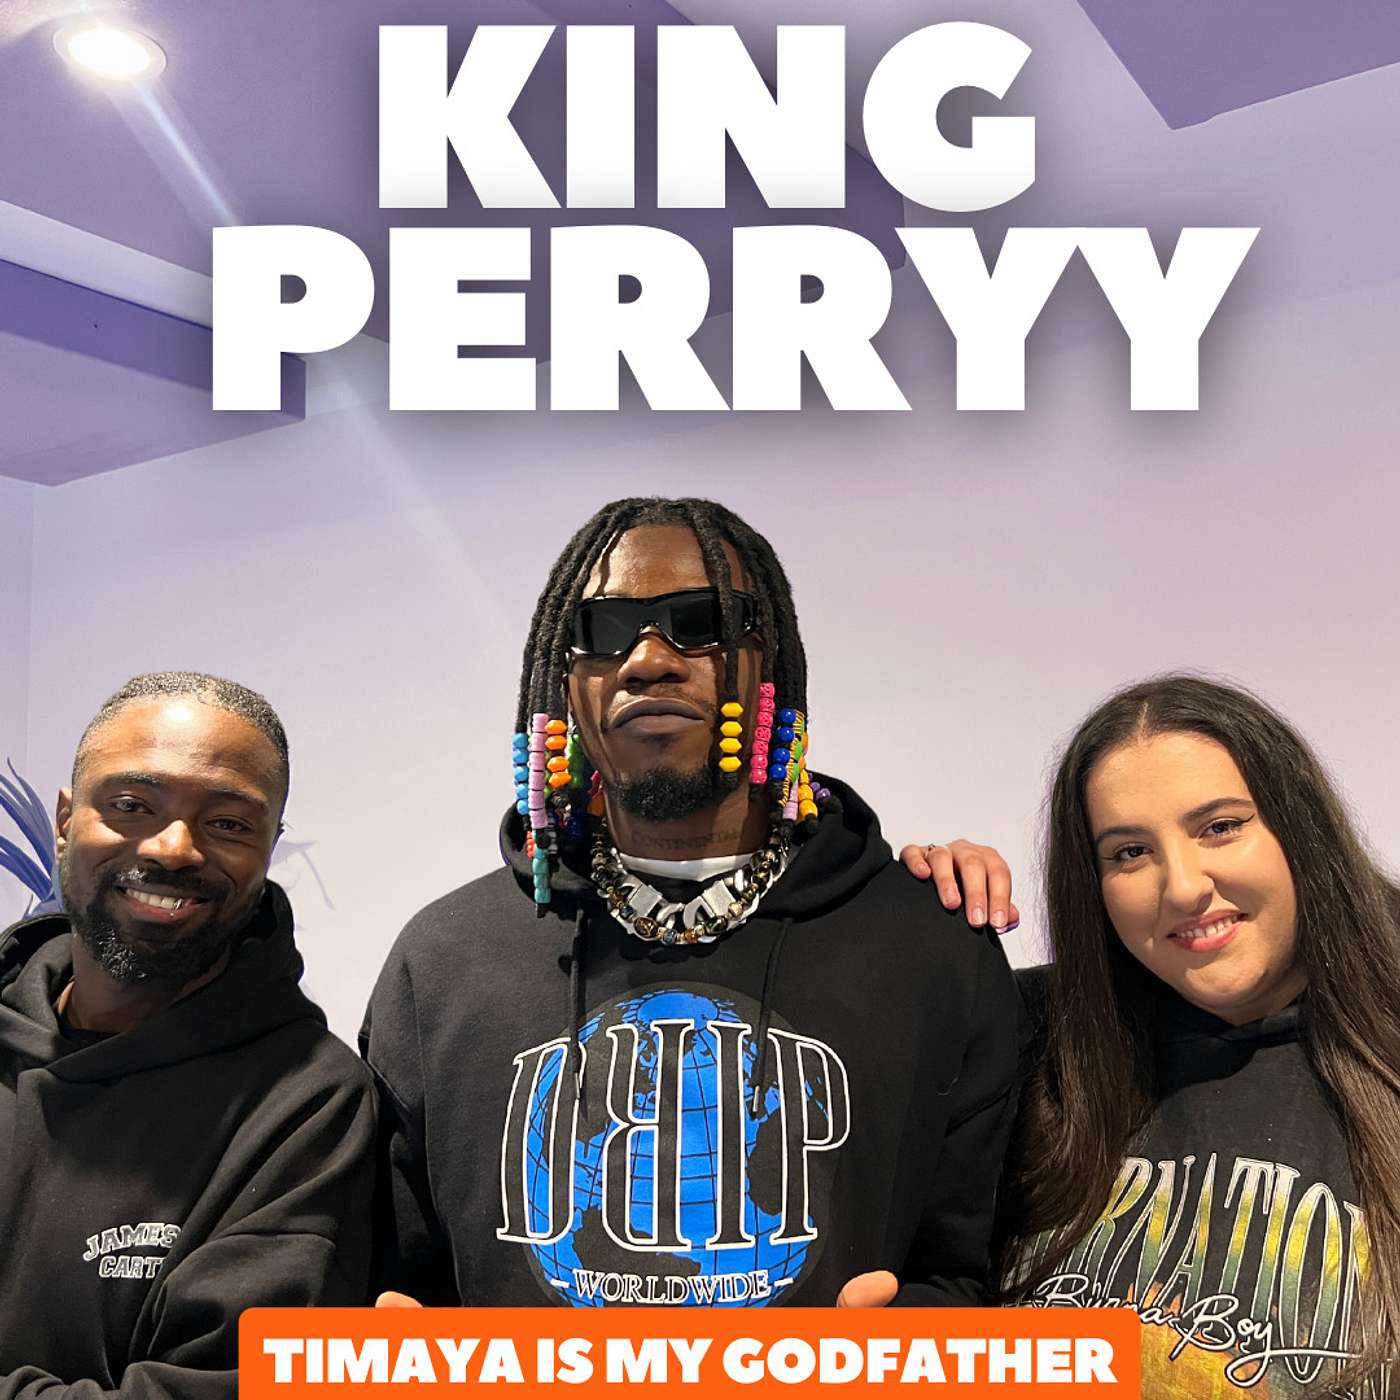 King Perryy: “Timaya Is My Godfather”